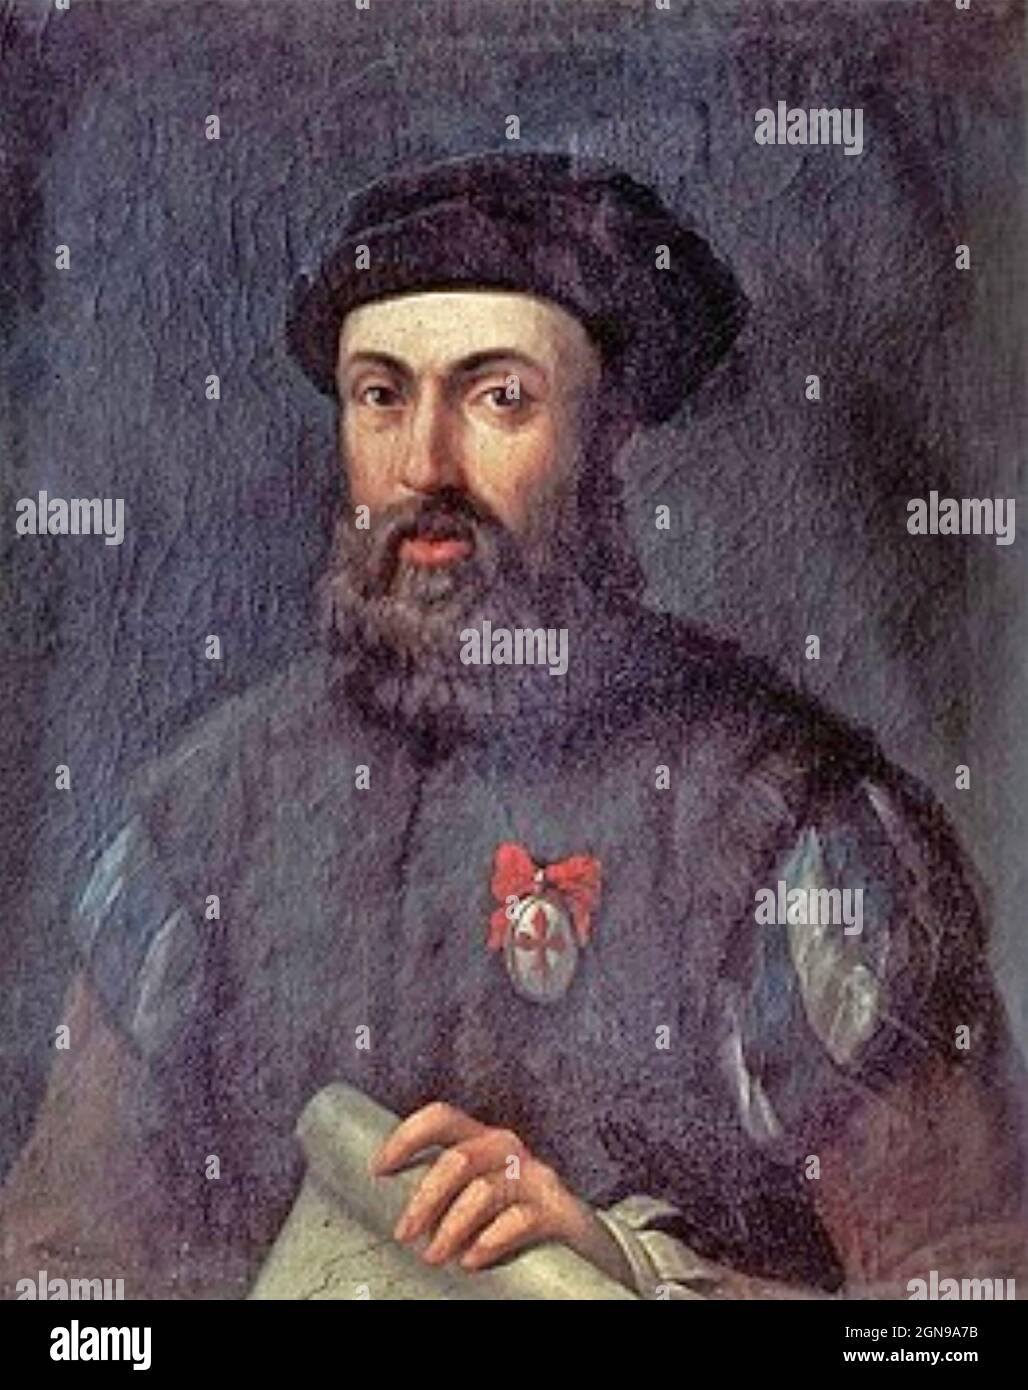 FERDINAND MAGELLAN (1480-1521) explorateur espagnol dans un portrait anonyme créé entre 1550 et 1625 Banque D'Images